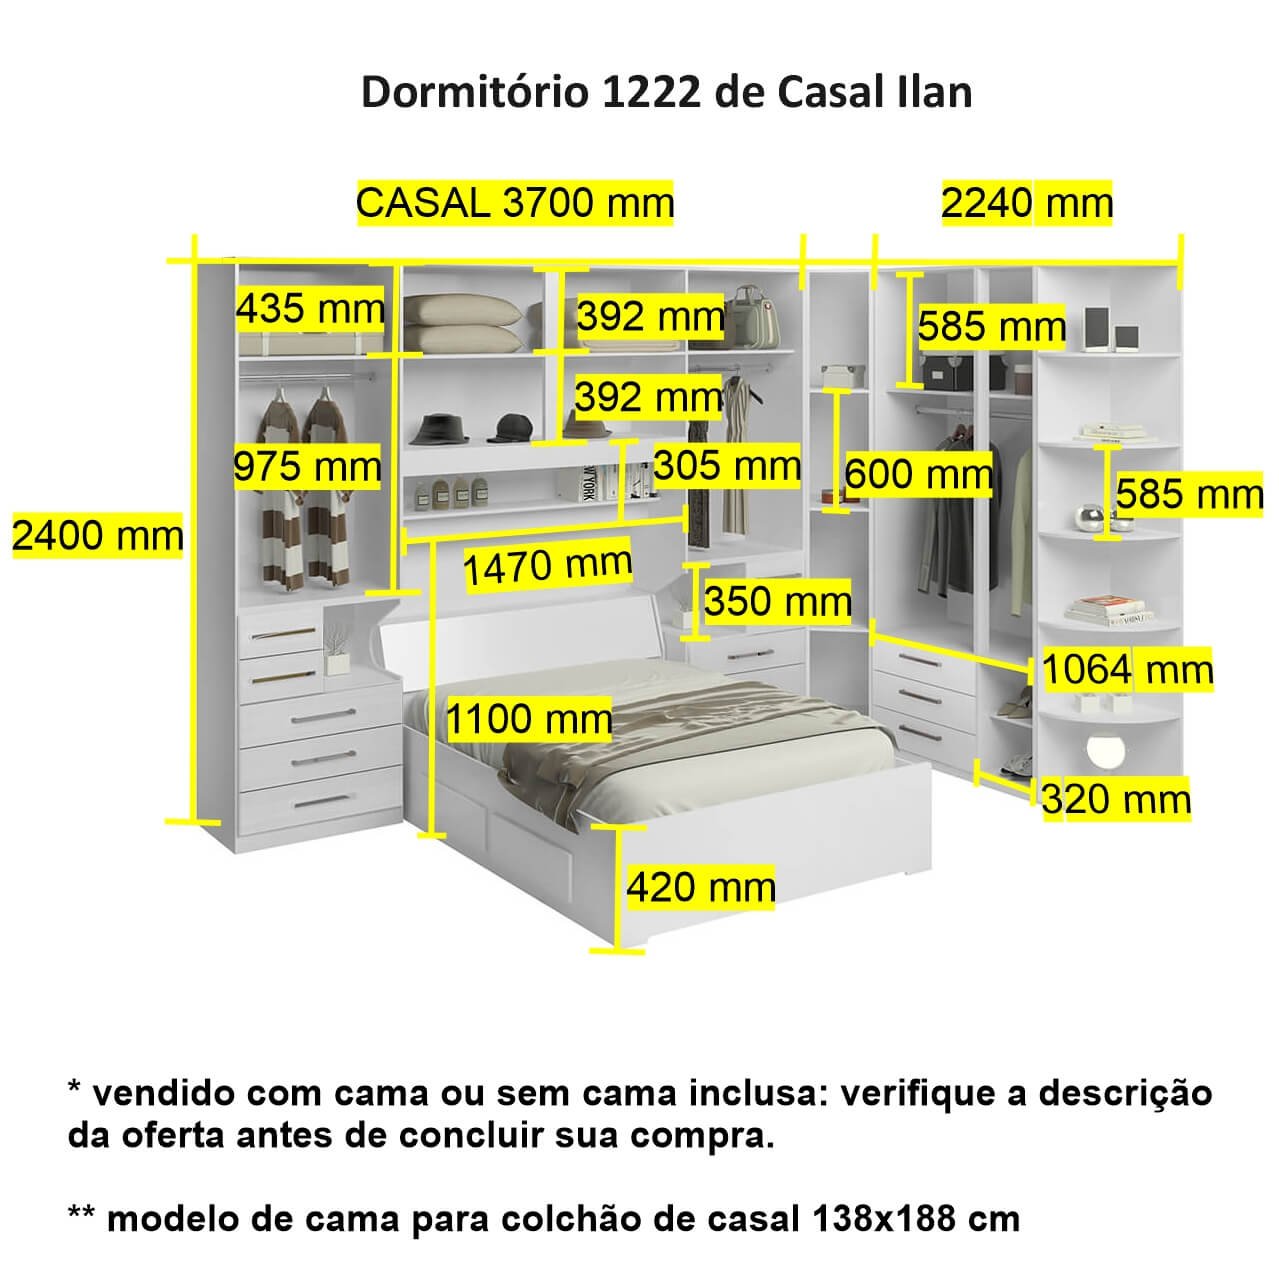 Dormitório de Casal sem Cama 1222s Carvalho Claro - 3